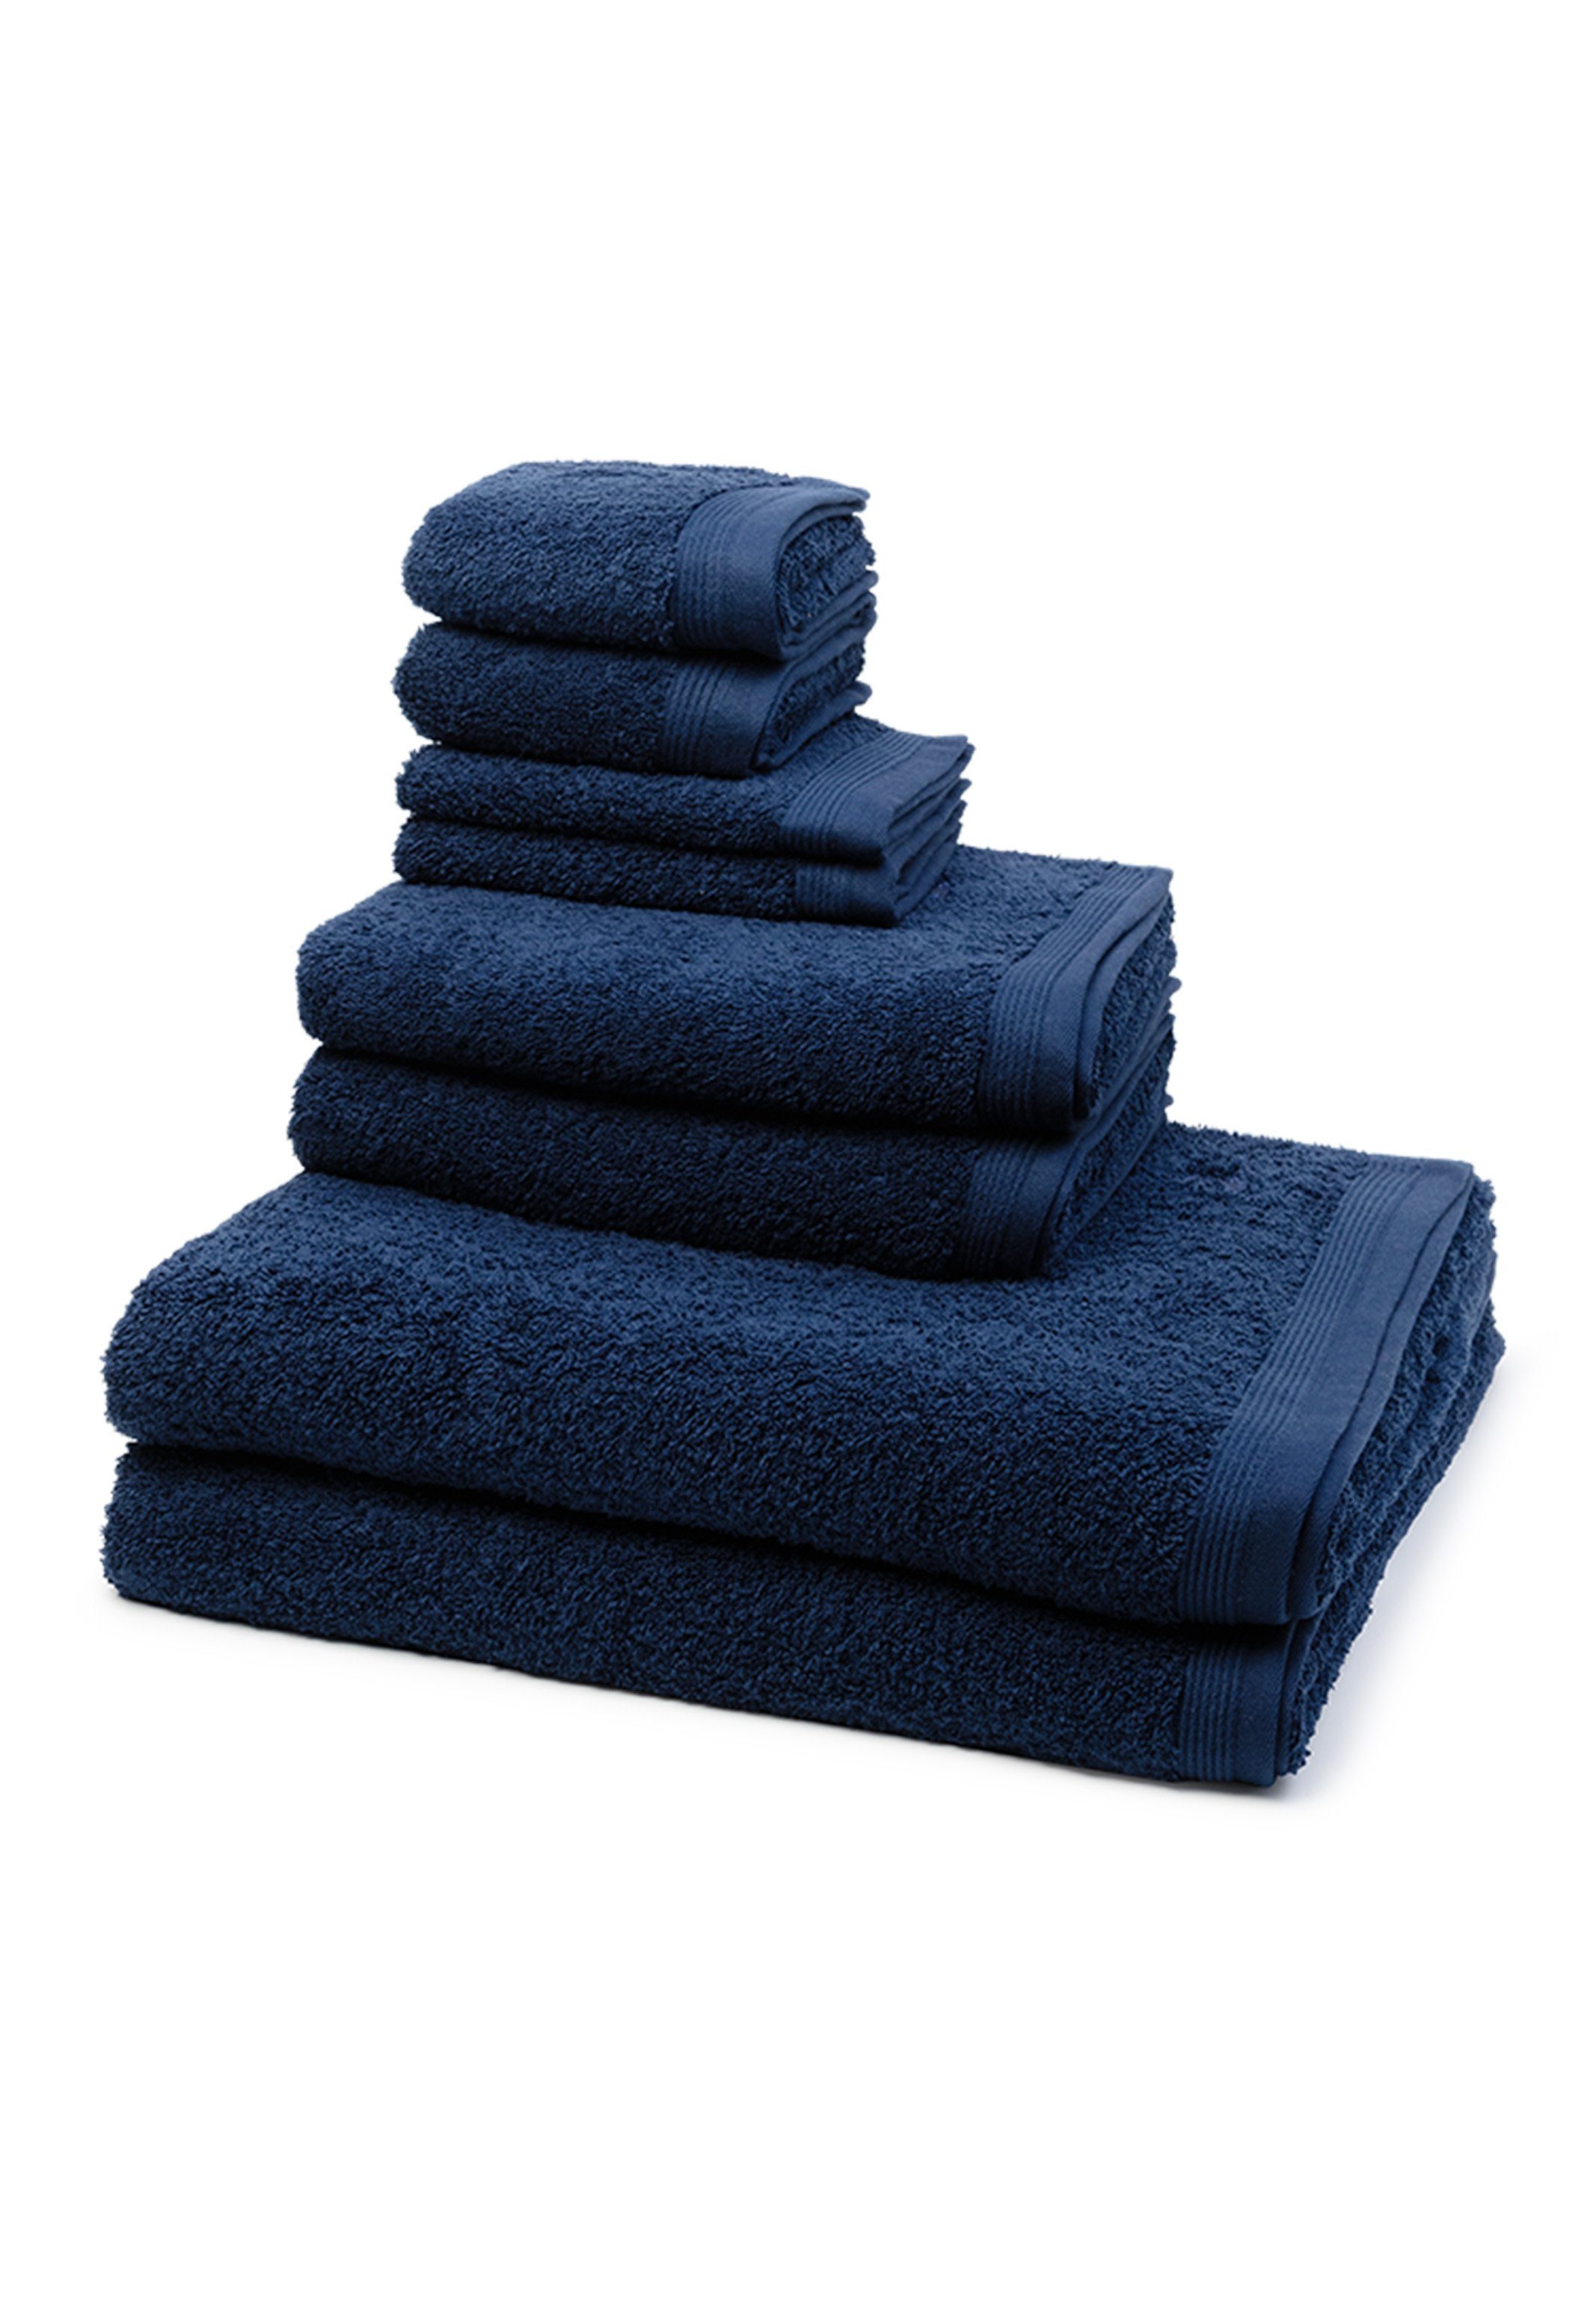 Möve Handtücher online kaufen | OTTO